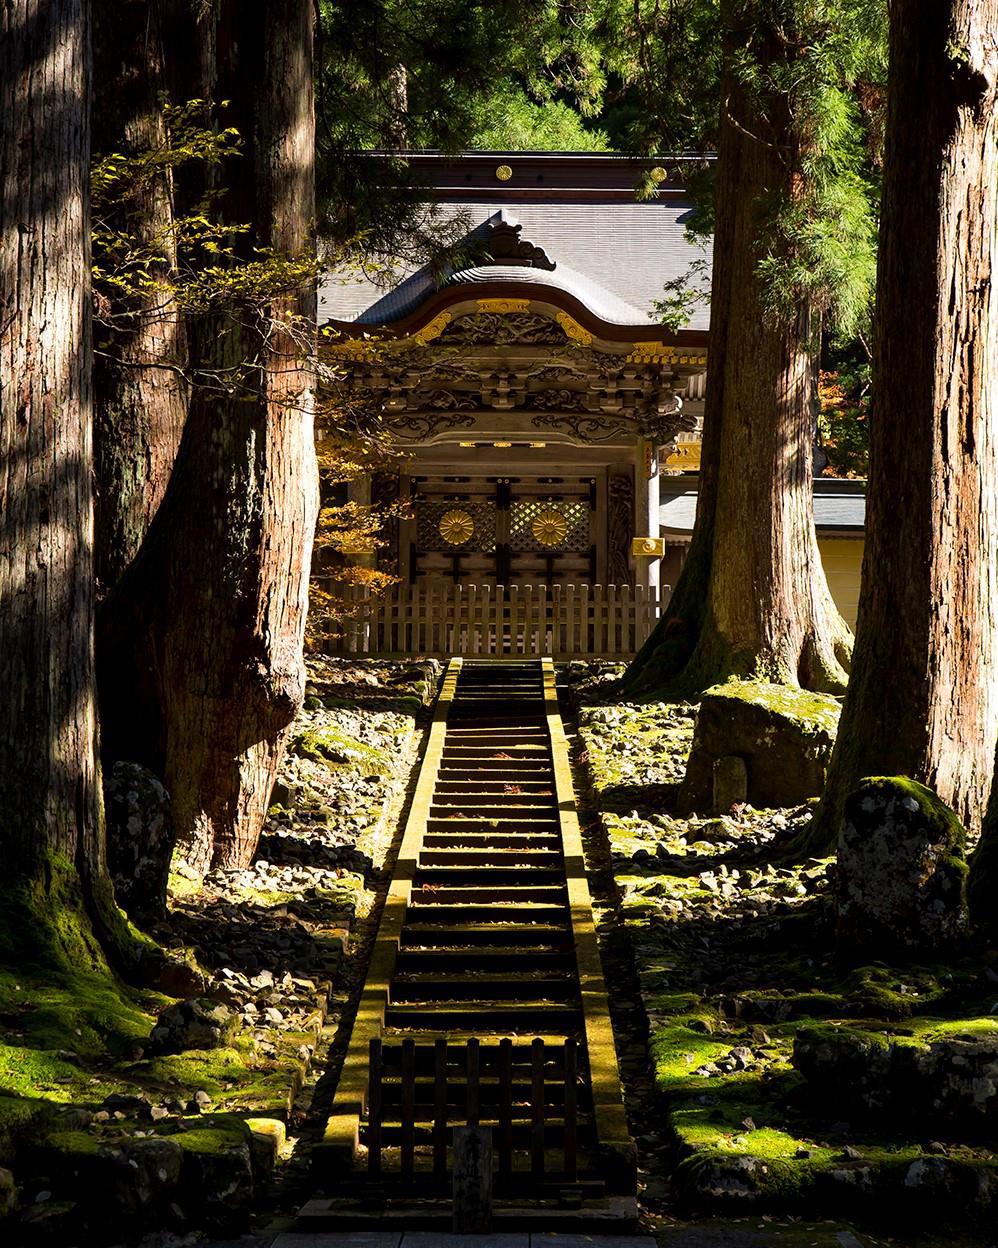 「禅」の聖地で「坐禅」を体験の後、古い城下町へ。 日本の心に触れる一日。